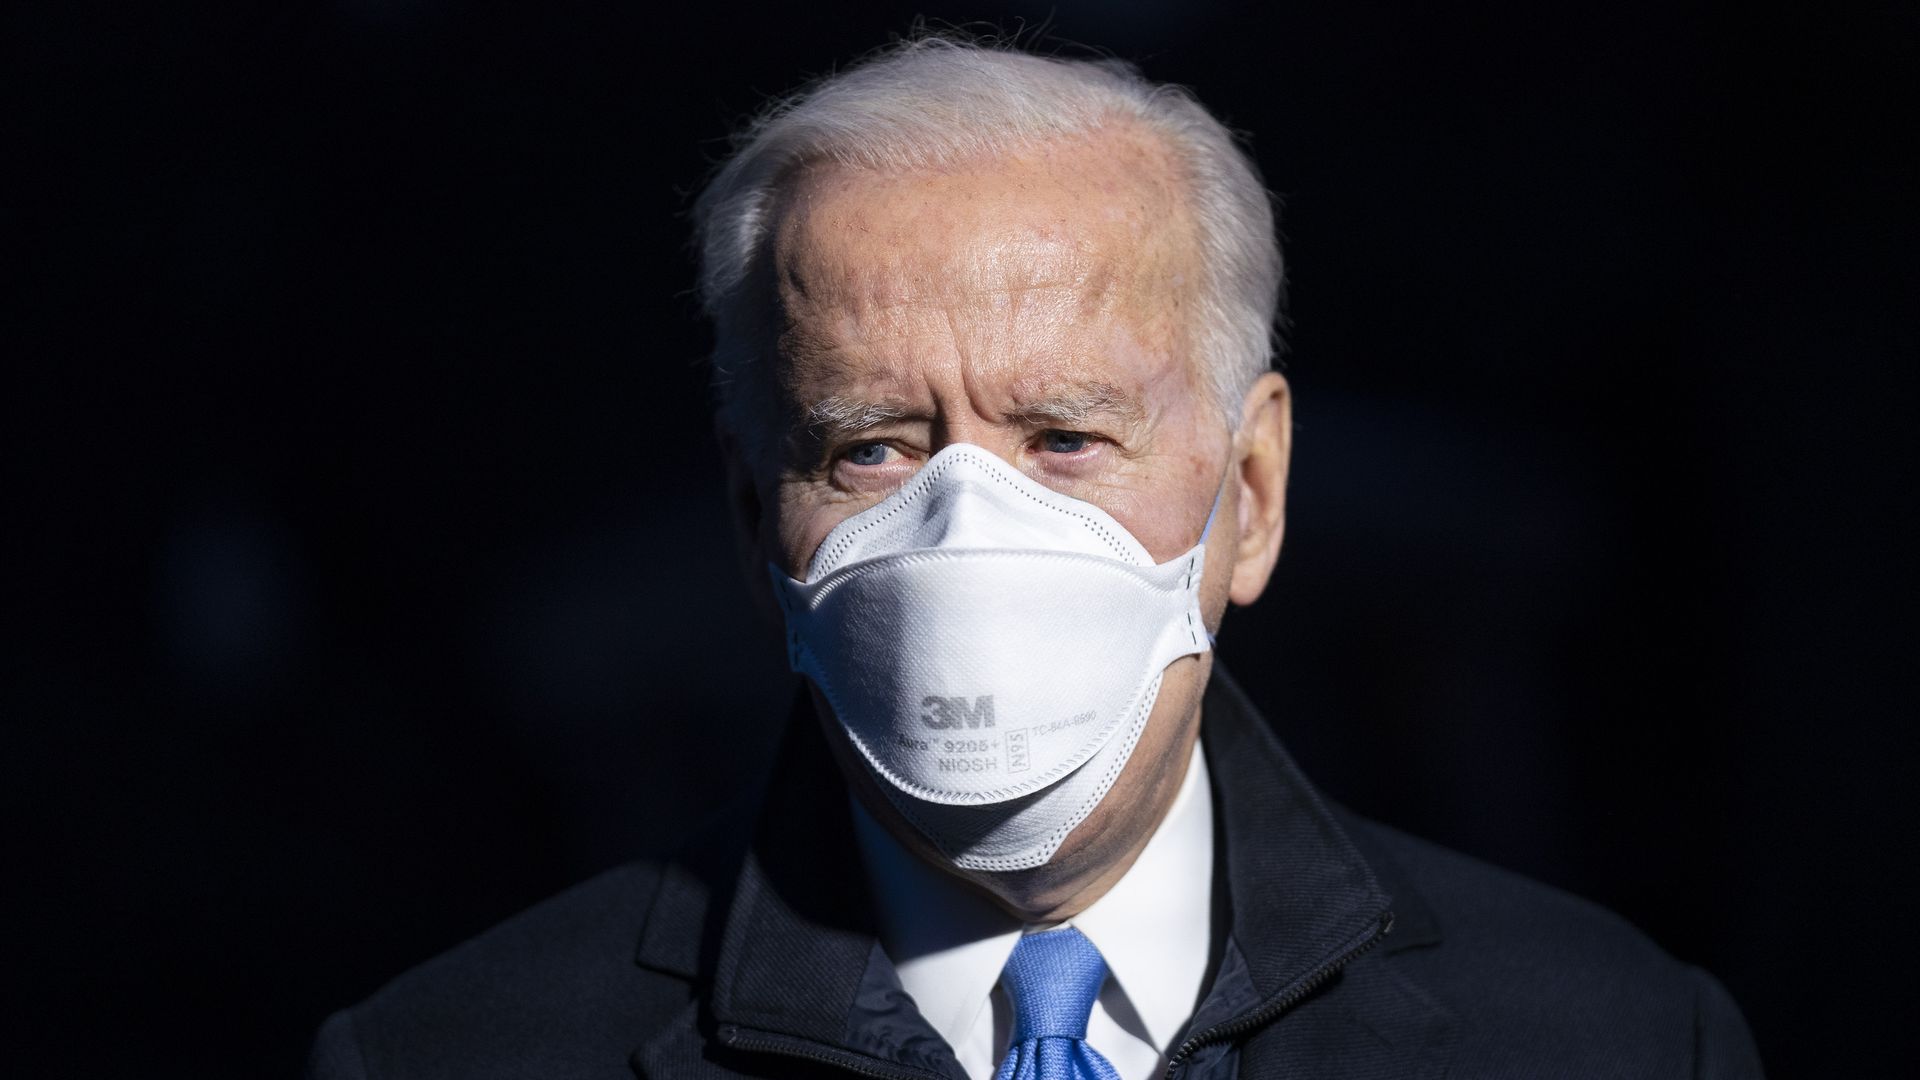 Joe Biden wears a 3M face mask